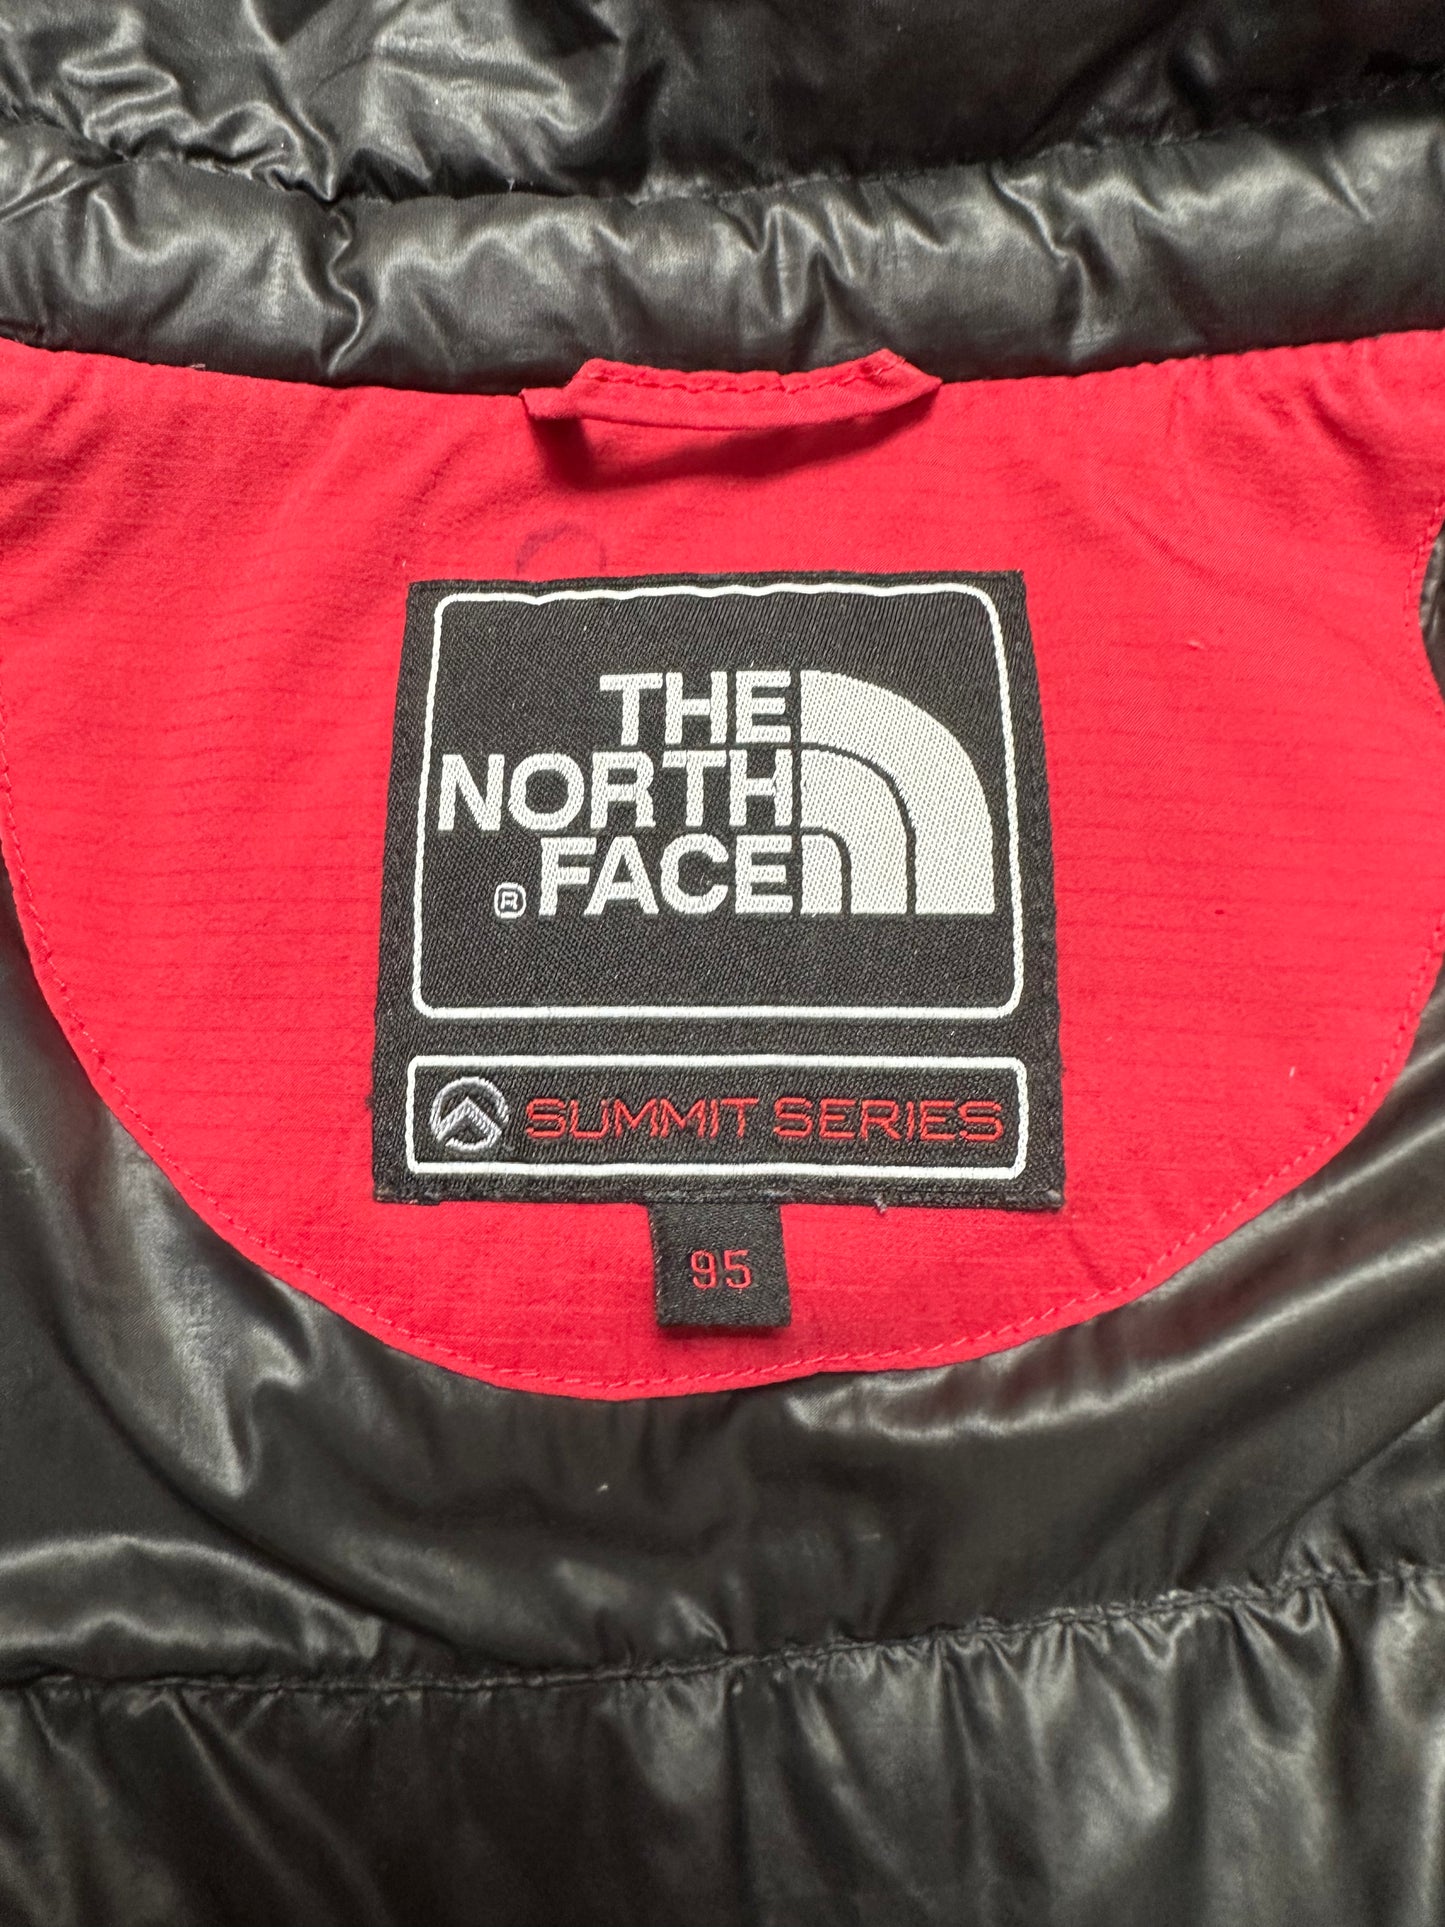 10040【THE NORTH FACE】ザノースフェイス メンズ サミットシリーズ ダウンパーカー 900フィル レッド 95